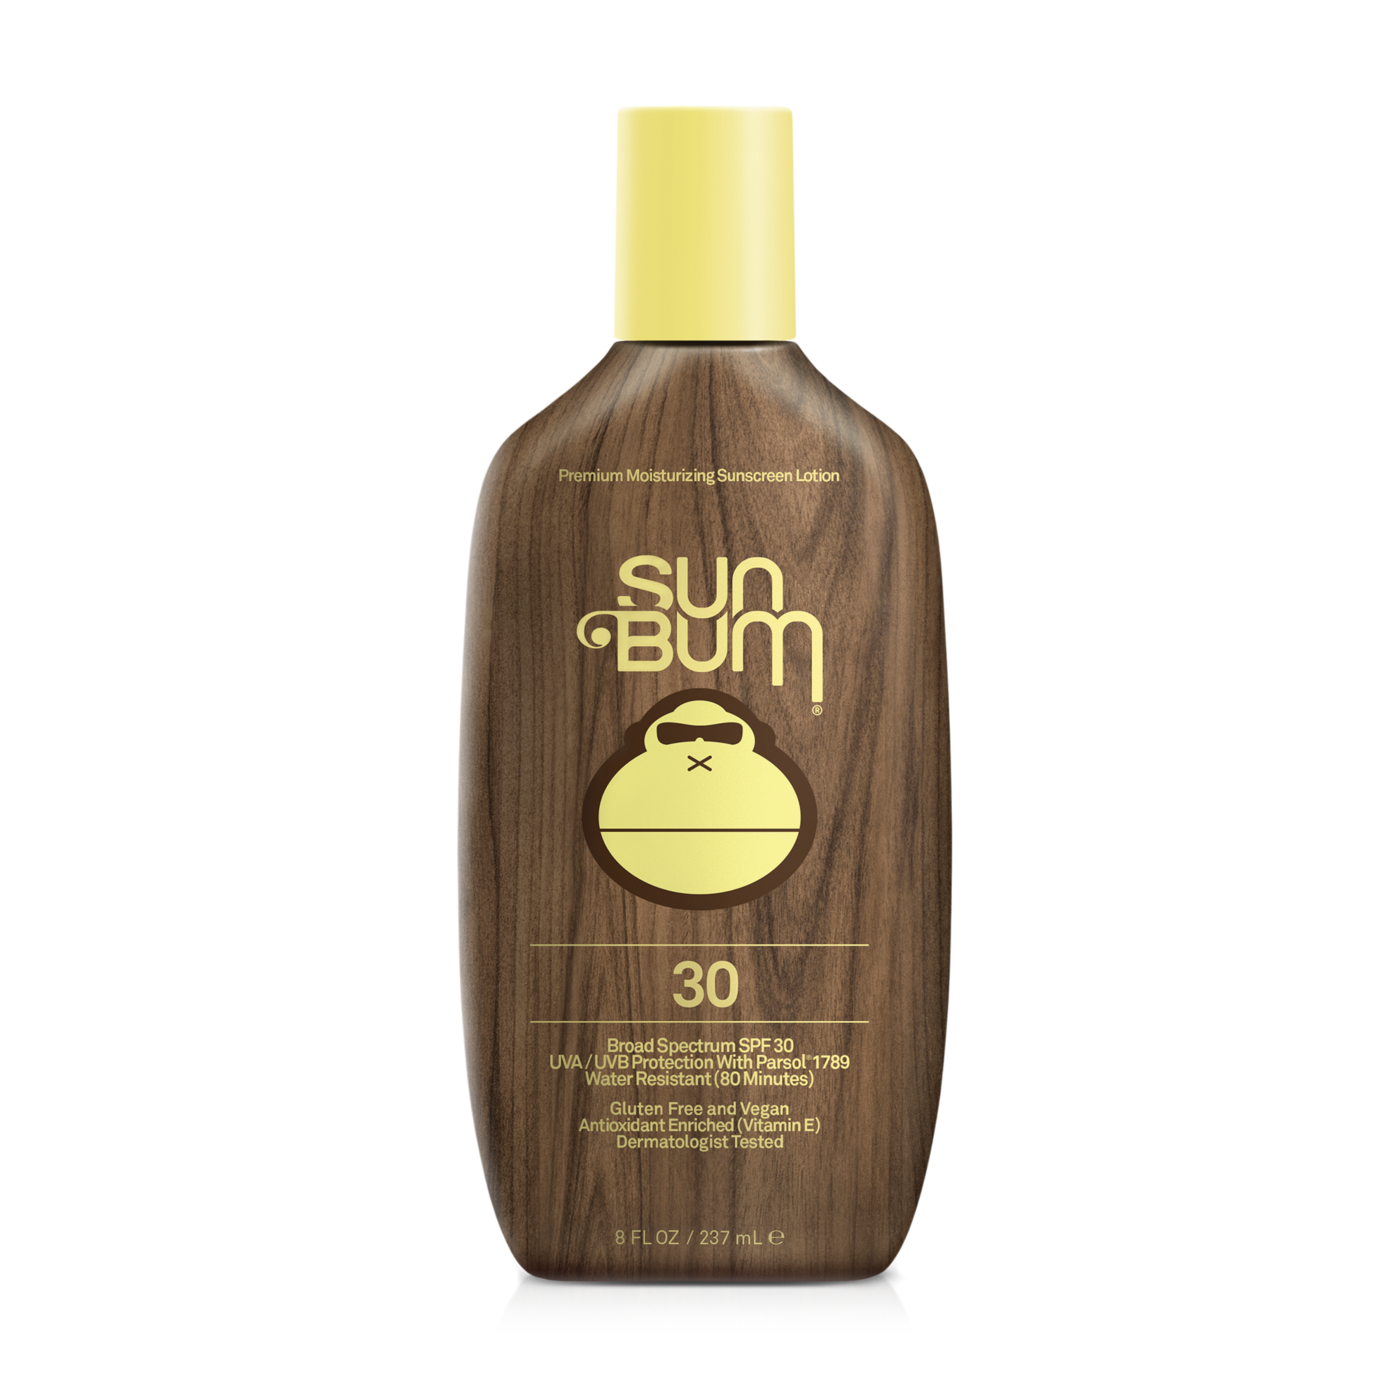 Sun Bum Sunscreen Lotion 30SPF